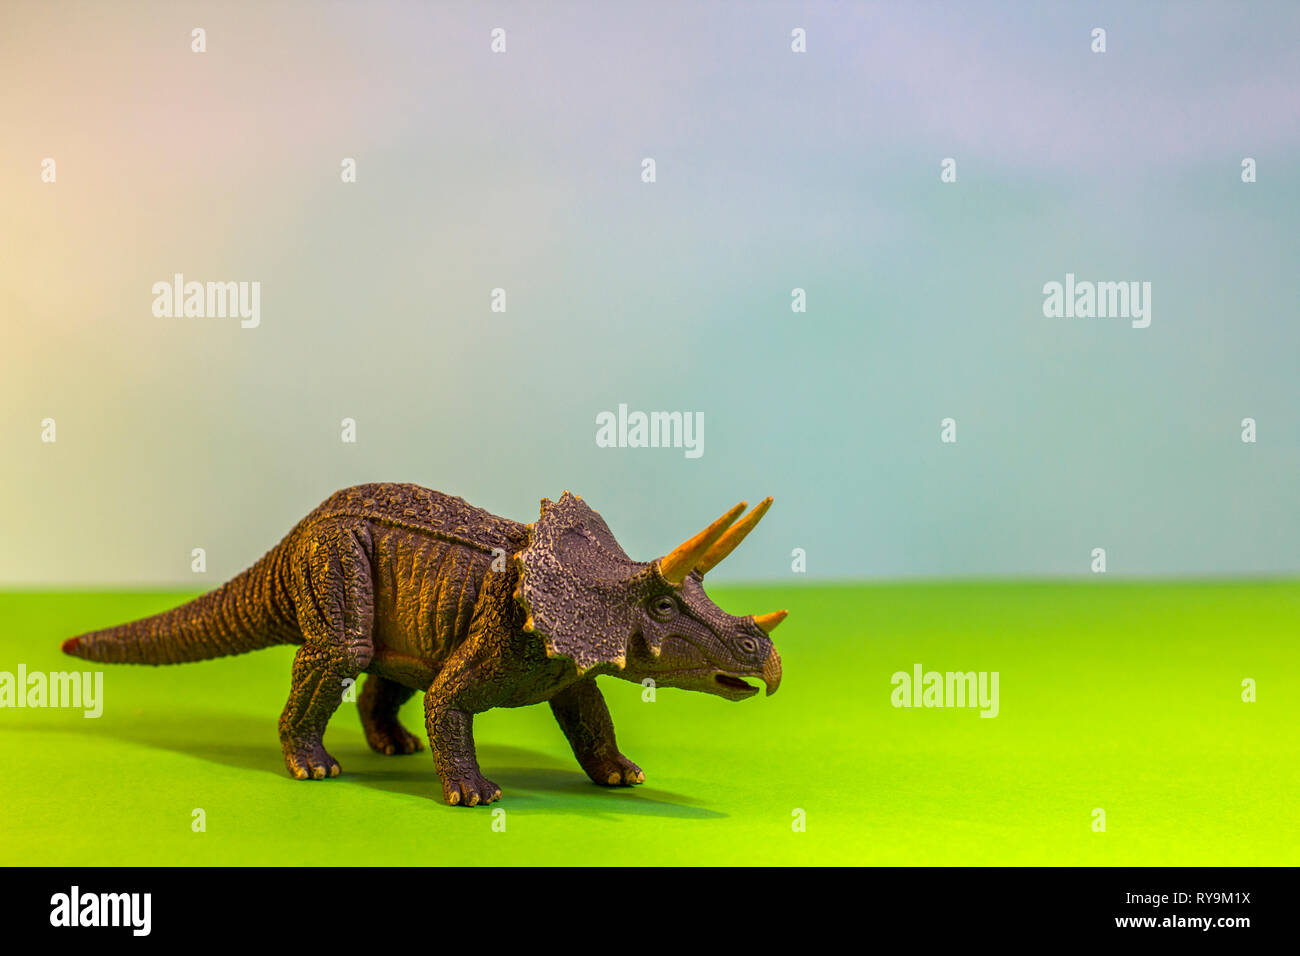 Dinosauro giocattolo in una foresta giocattolo. come un vero e proprio dino su uno studio luminoso dello sfondo con alberi di legno. Eco giocattoli. Foto Stock